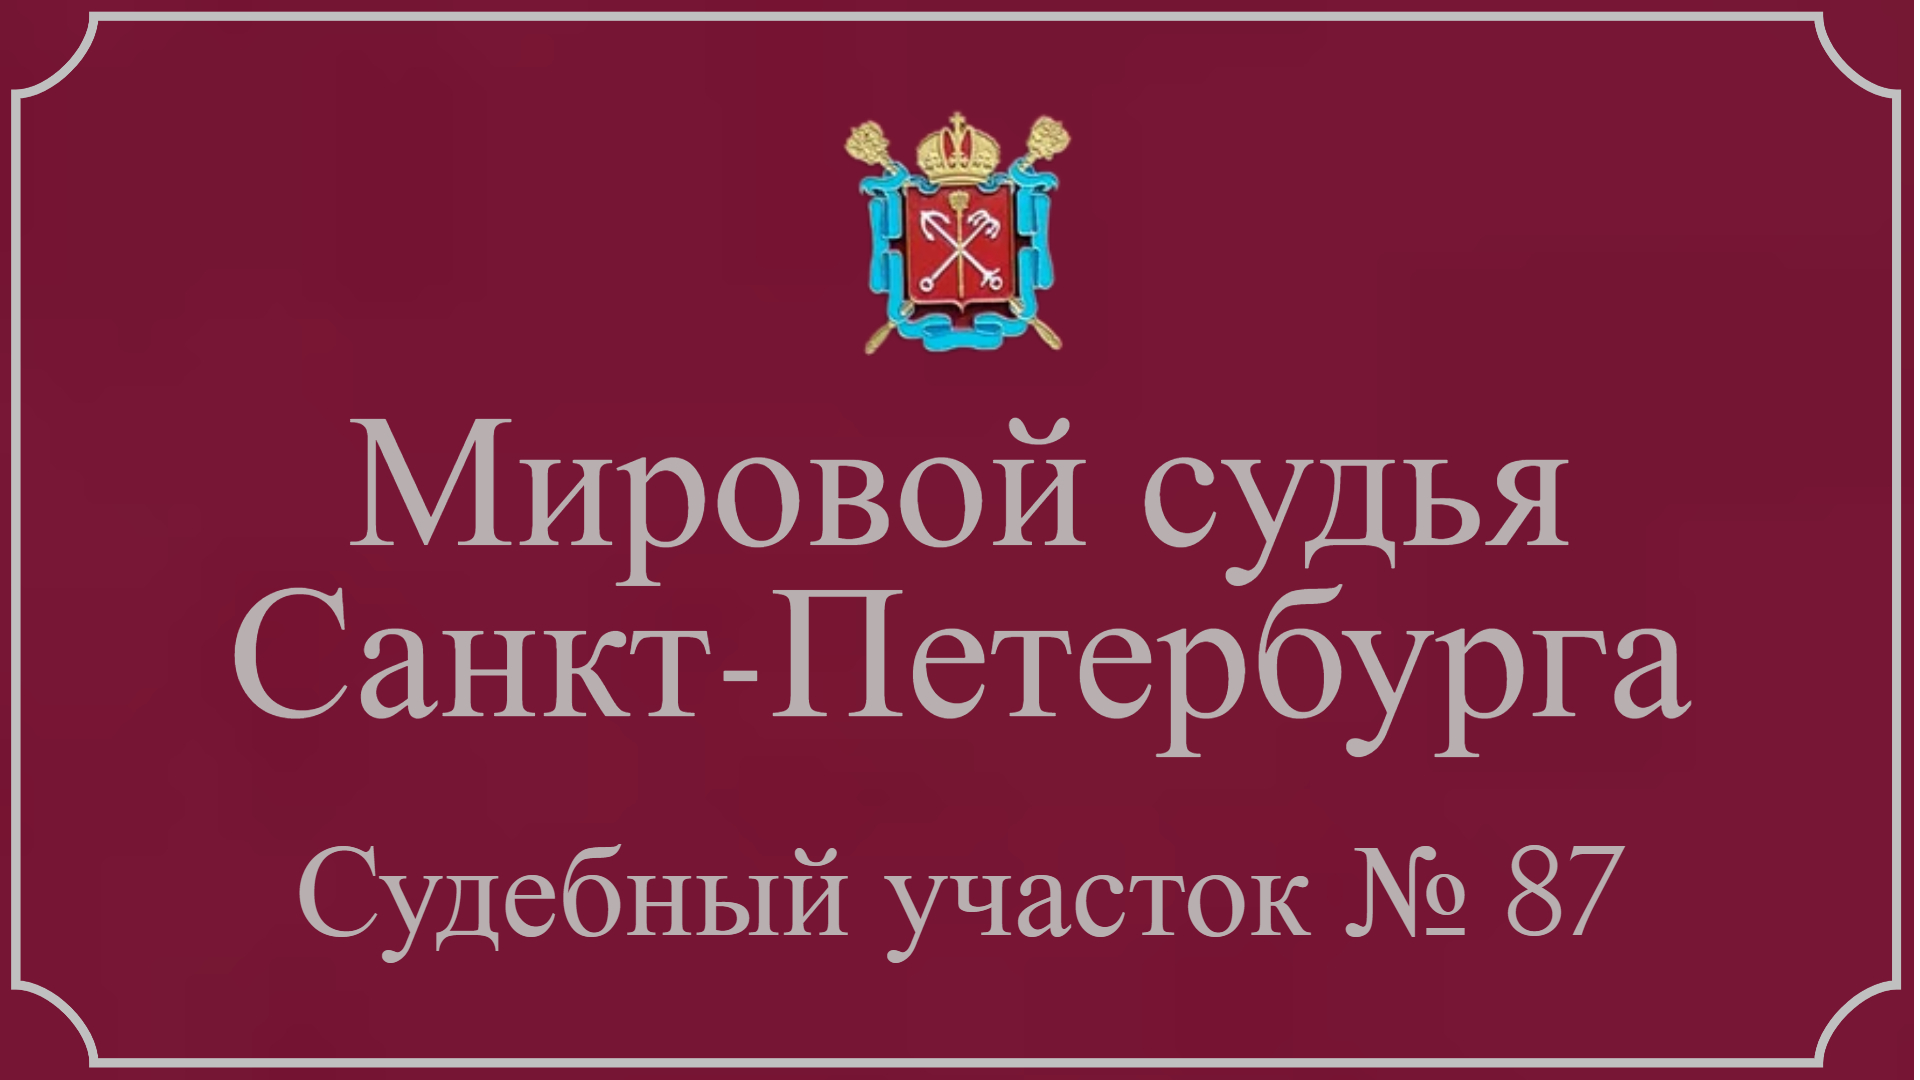 Информация по 87 судебному участку в Санкт-Петербурге.